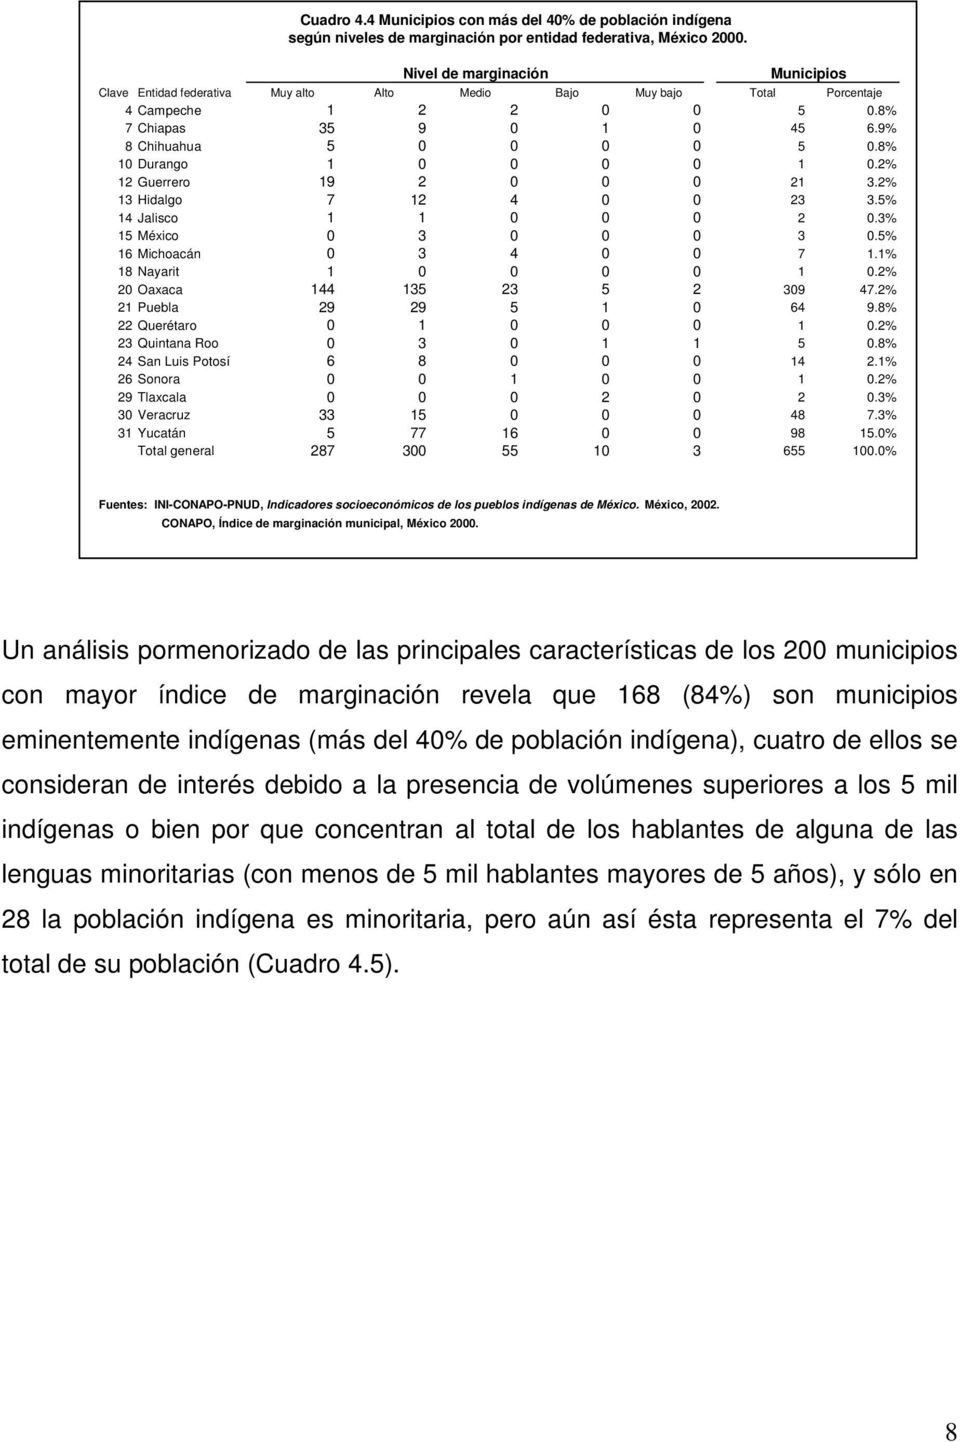 8% 10 Durango 1 0 0 0 0 1 0.2% 12 Guerrero 19 2 0 0 0 21 3.2% 13 Hidalgo 7 12 4 0 0 23 3.5% 14 Jalisco 1 1 0 0 0 2 0.3% 15 México 0 3 0 0 0 3 0.5% 16 Michoacán 0 3 4 0 0 7 1.